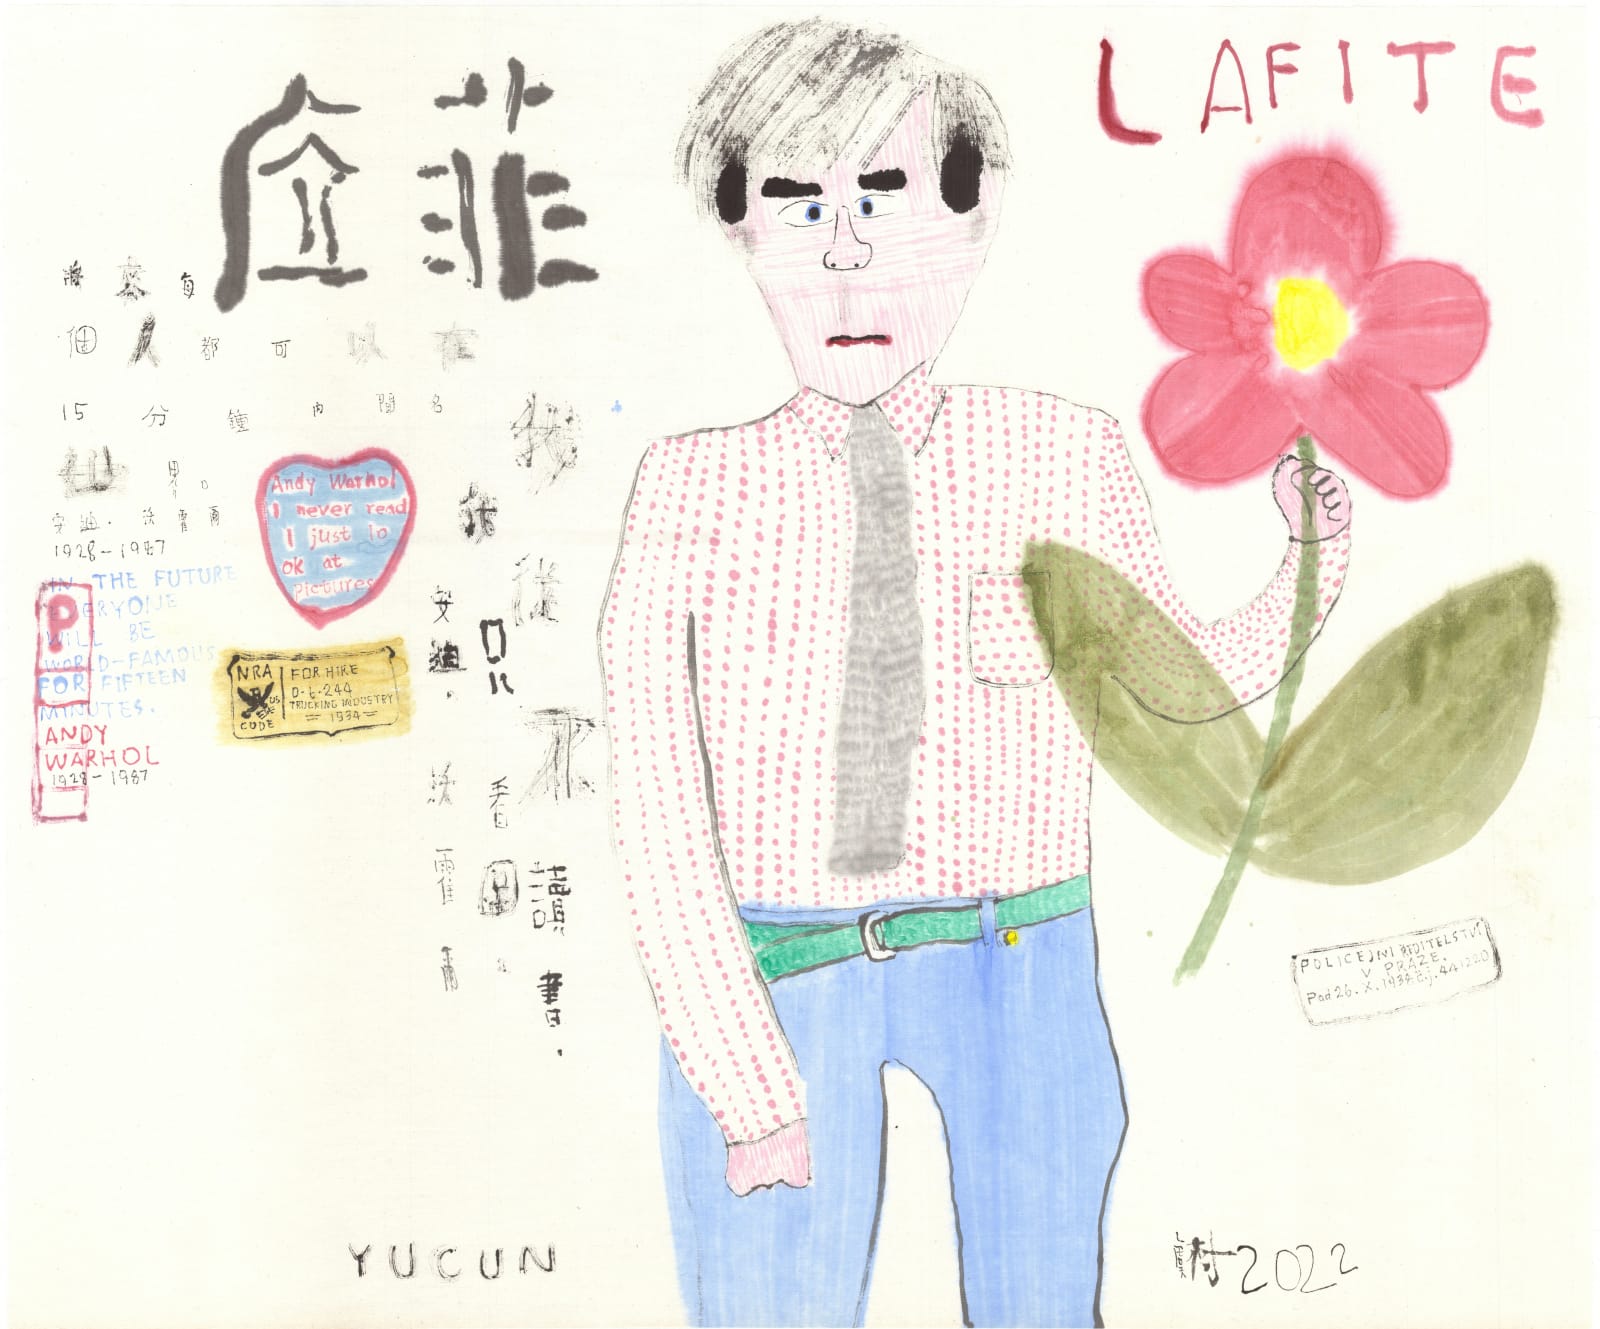 Yu Cun 虞村, Andy Warhol, 2022